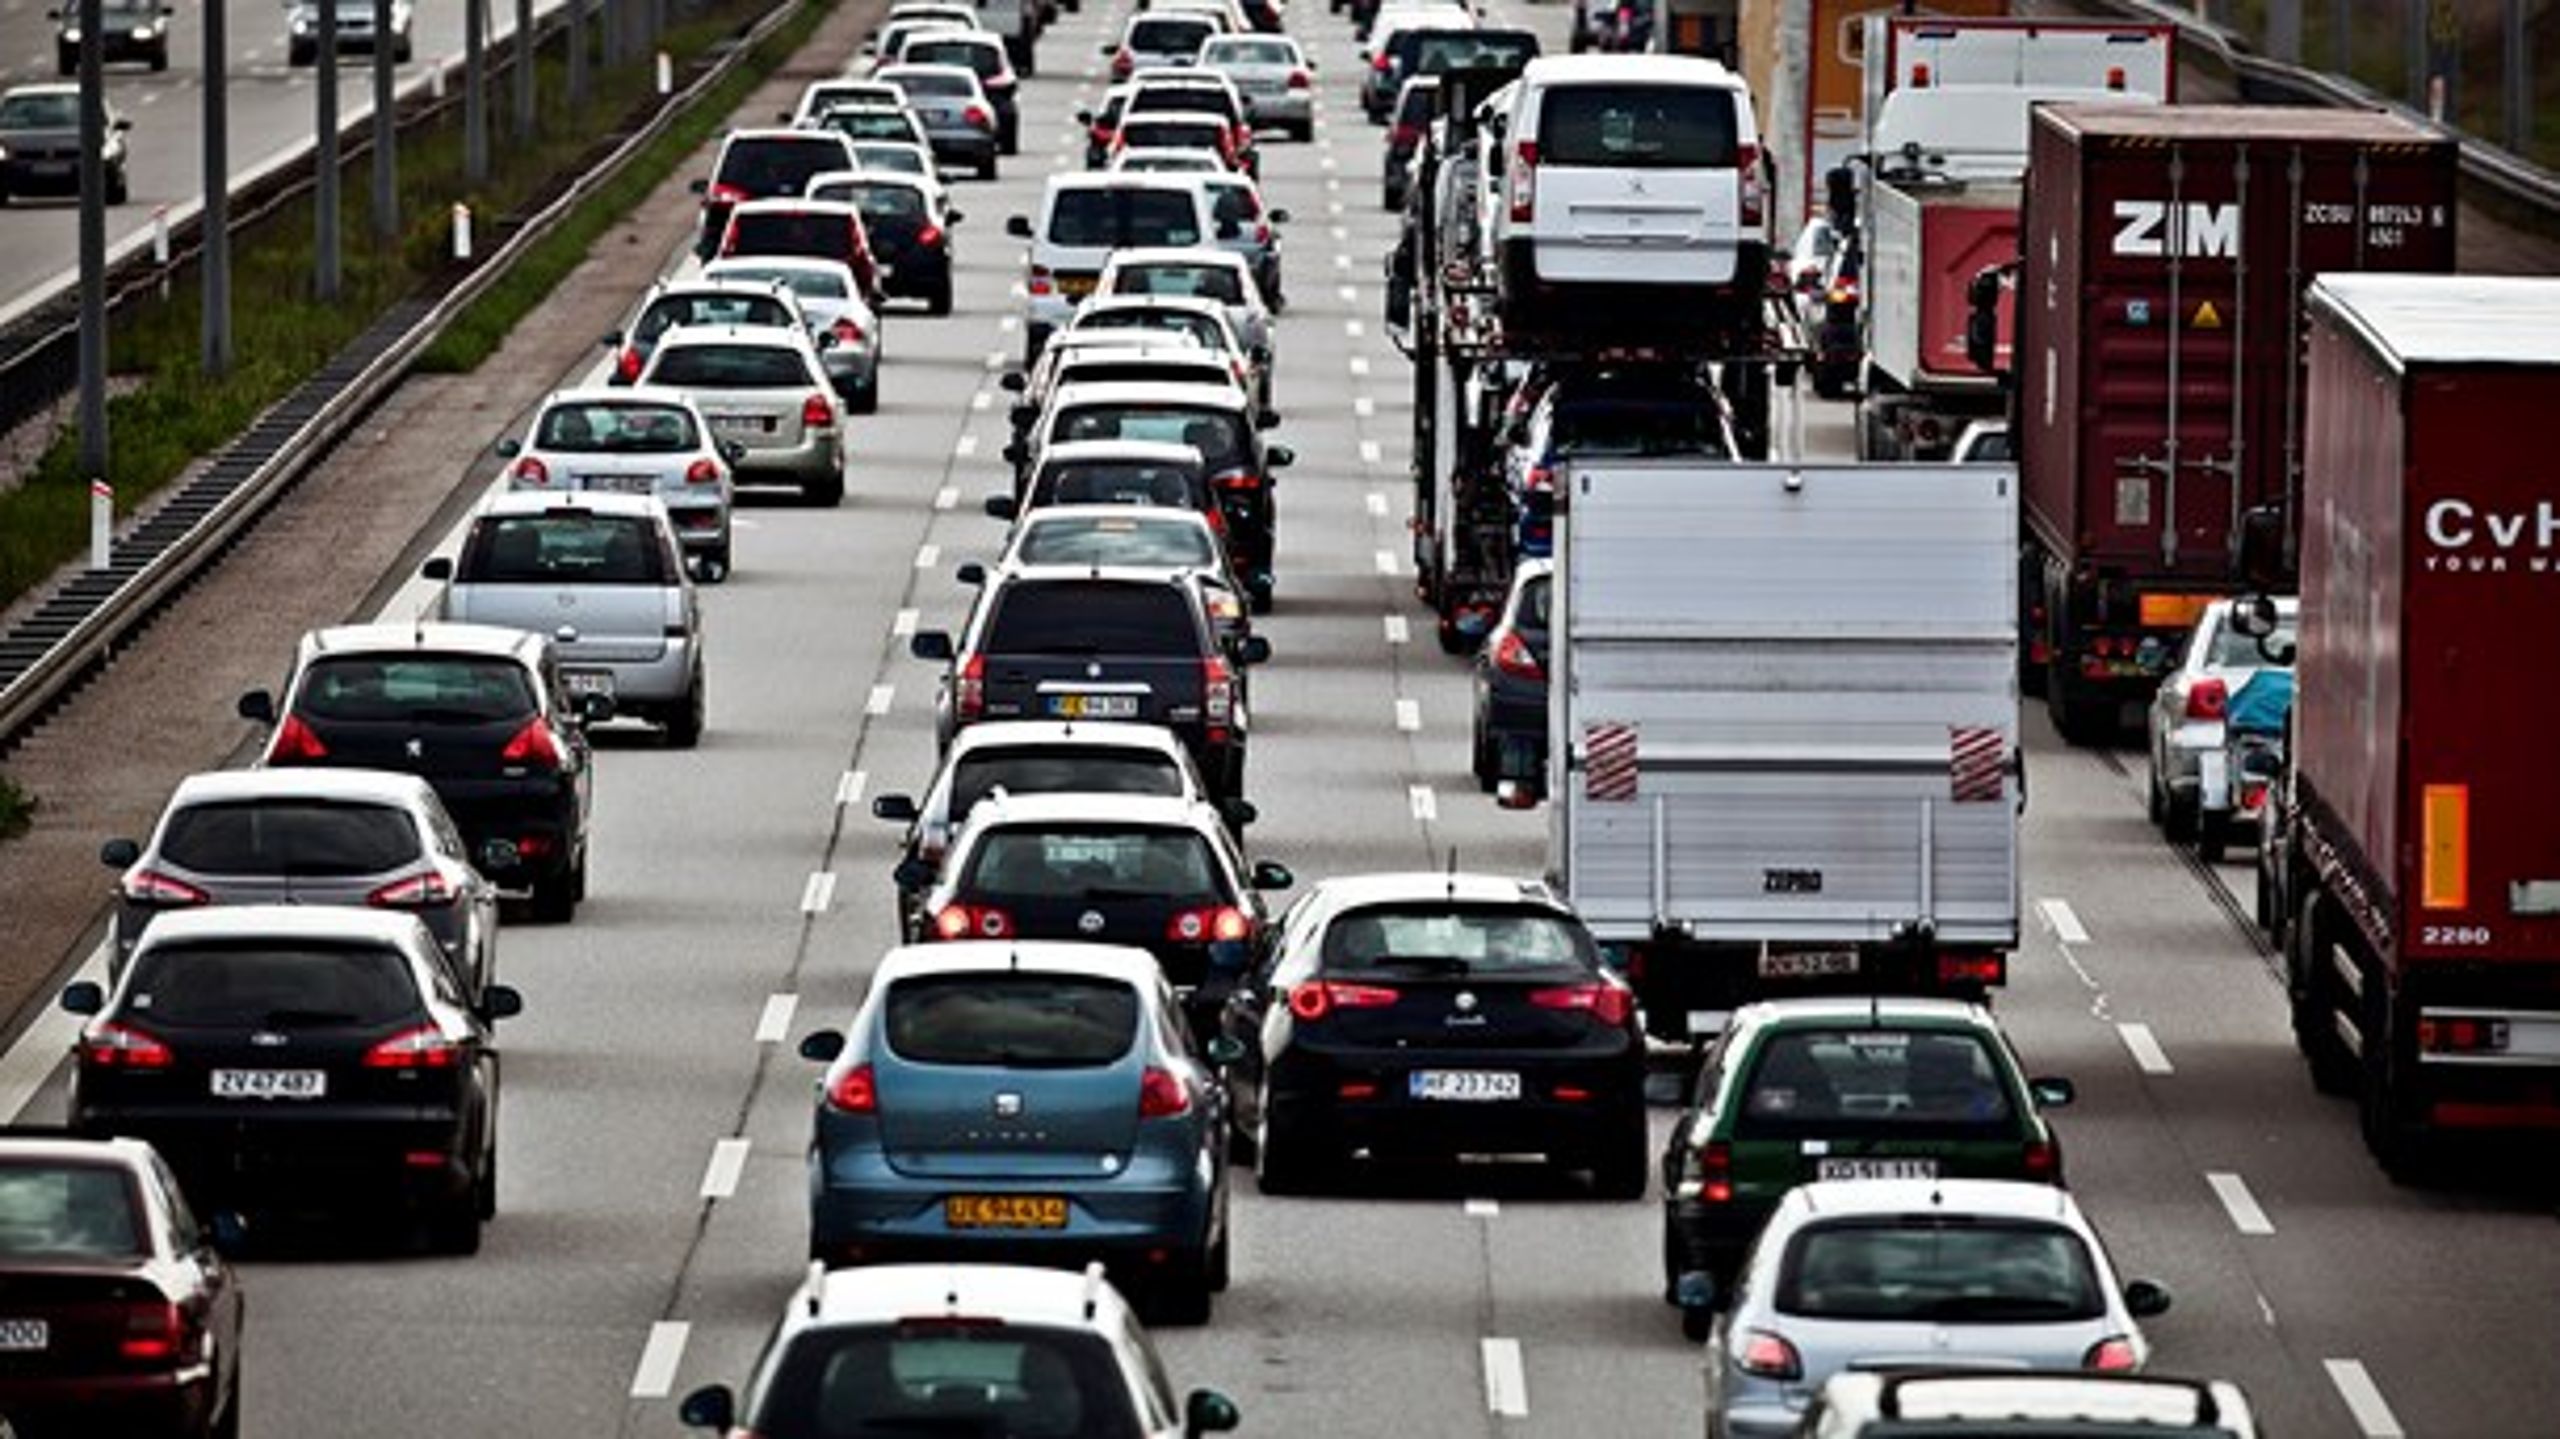 Endelig er EU på vej med brændstofkrav til lastbiler, skriver Jeppe Juul fra Det Økologiske Råd.